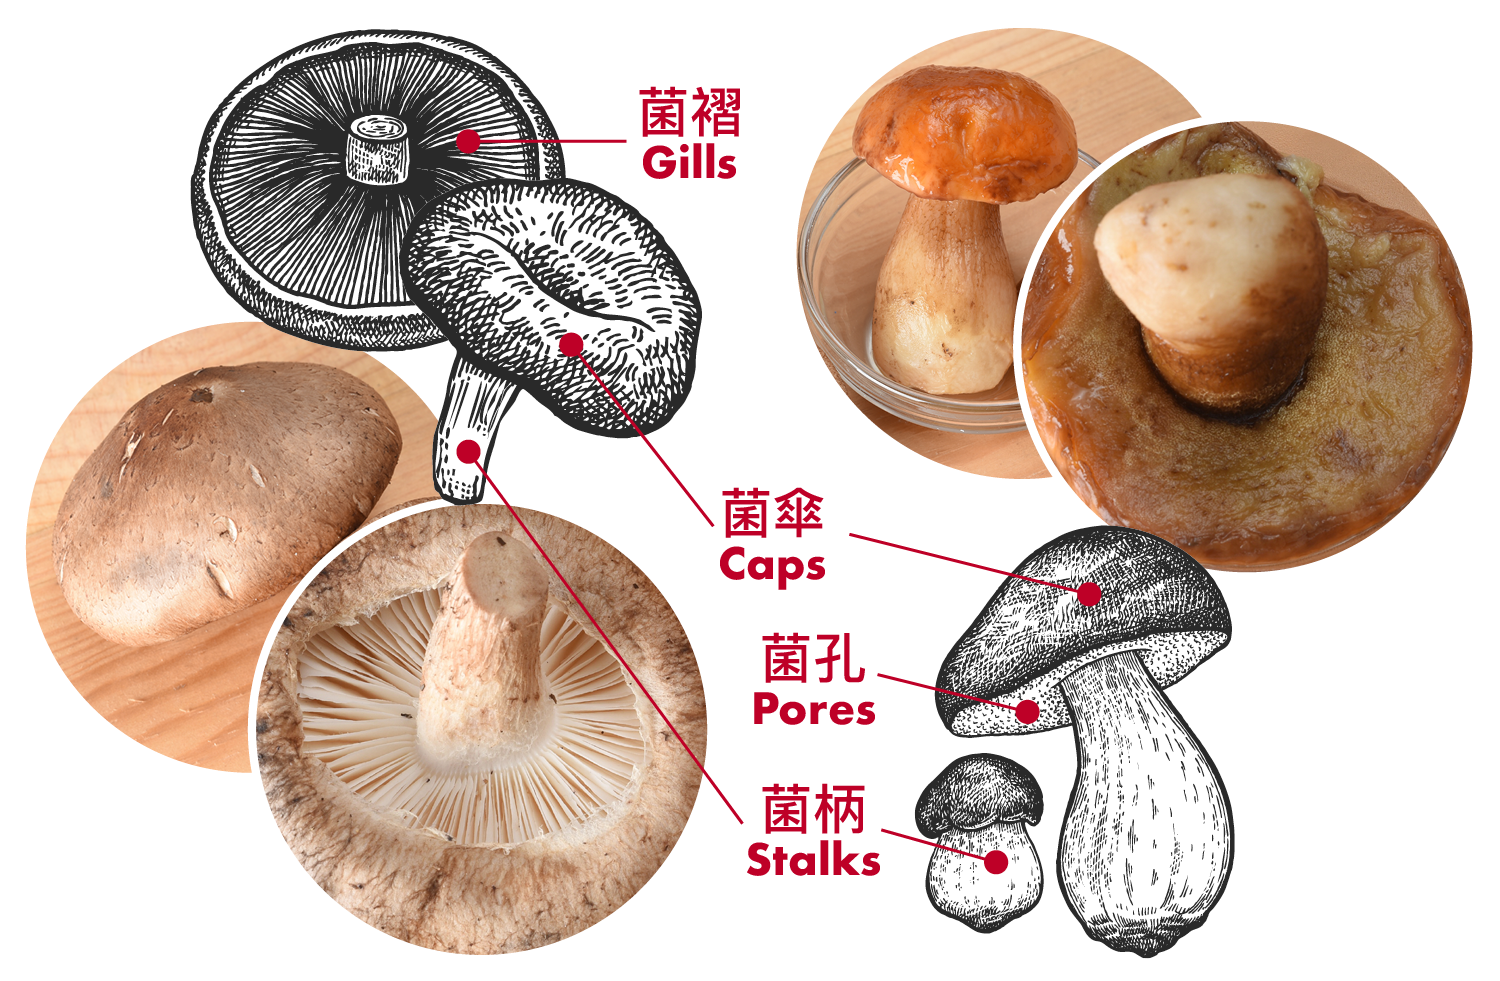 Figuur 1: Vergeleken met shiitake paddenstoelen (links) hebben boleten (rechts) poriën in plaats van kieuwen aan de onderkant van de hoed.